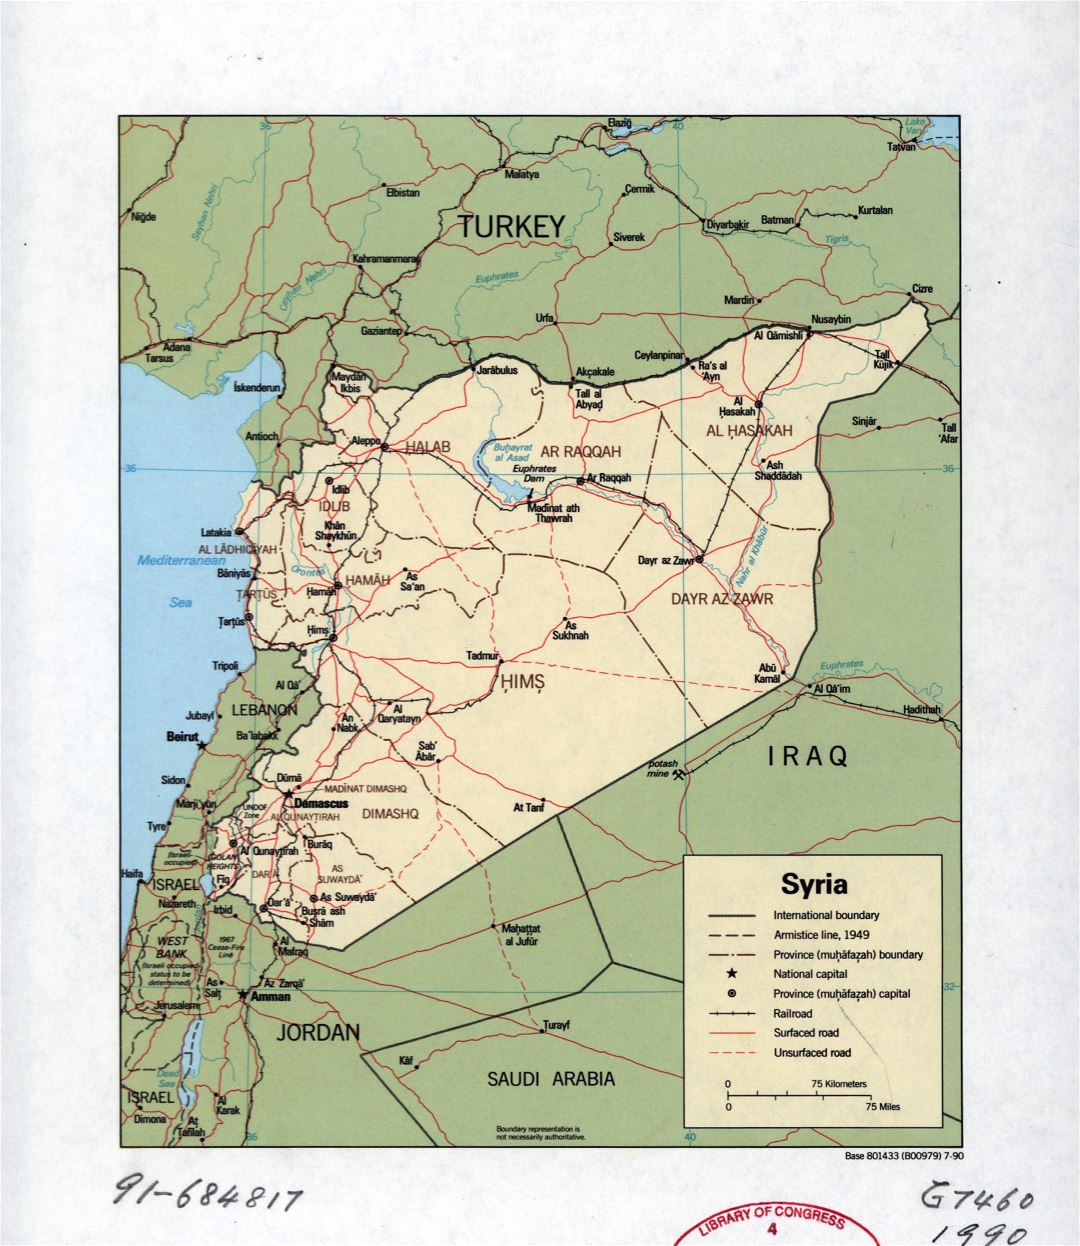 Grande detallado mapa político y administrativo de Siria con carreteras, ferrocarriles y principales ciudades - 1990